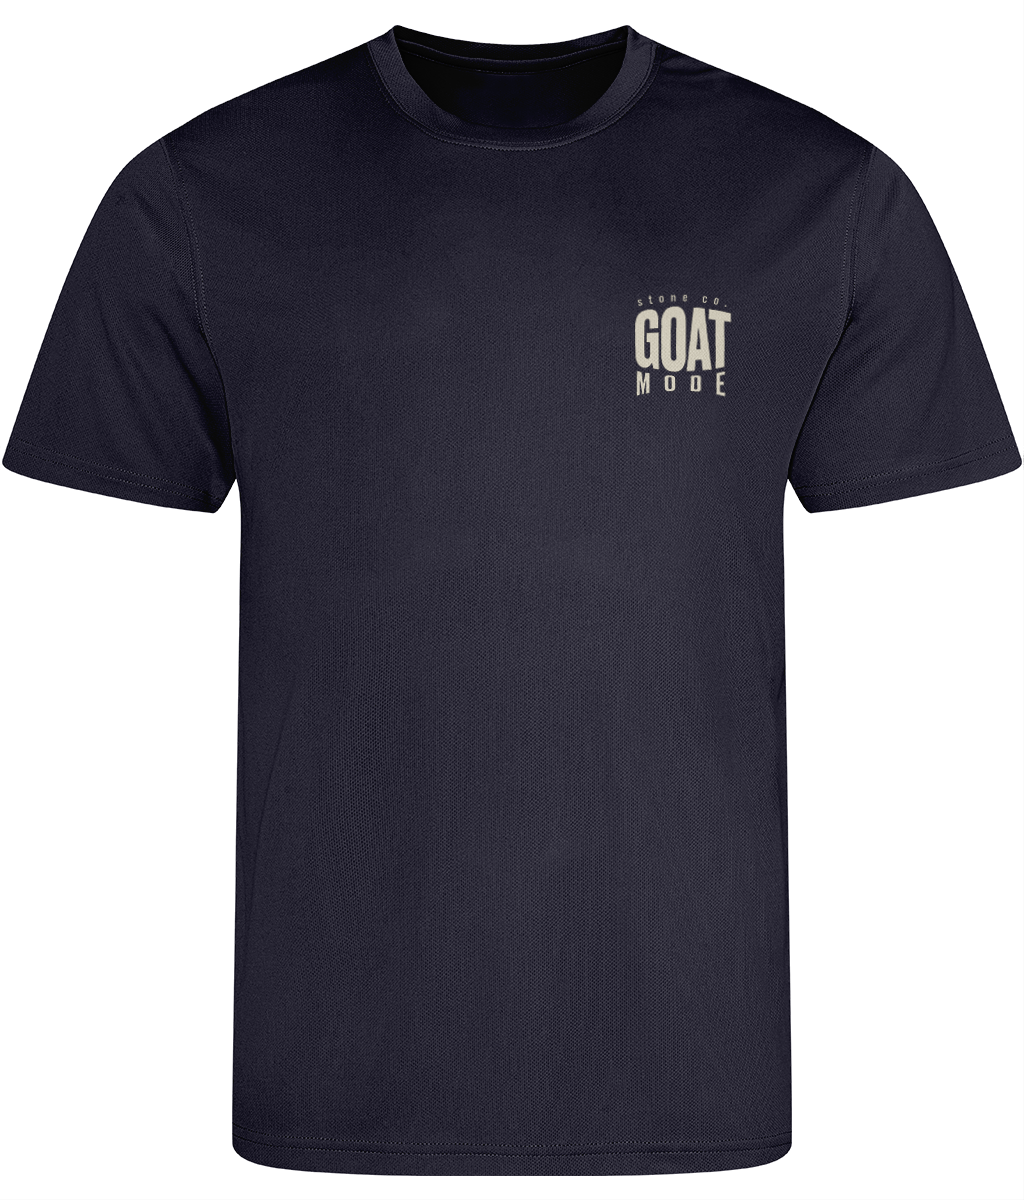 Goat mode (subtle) active t-shirt